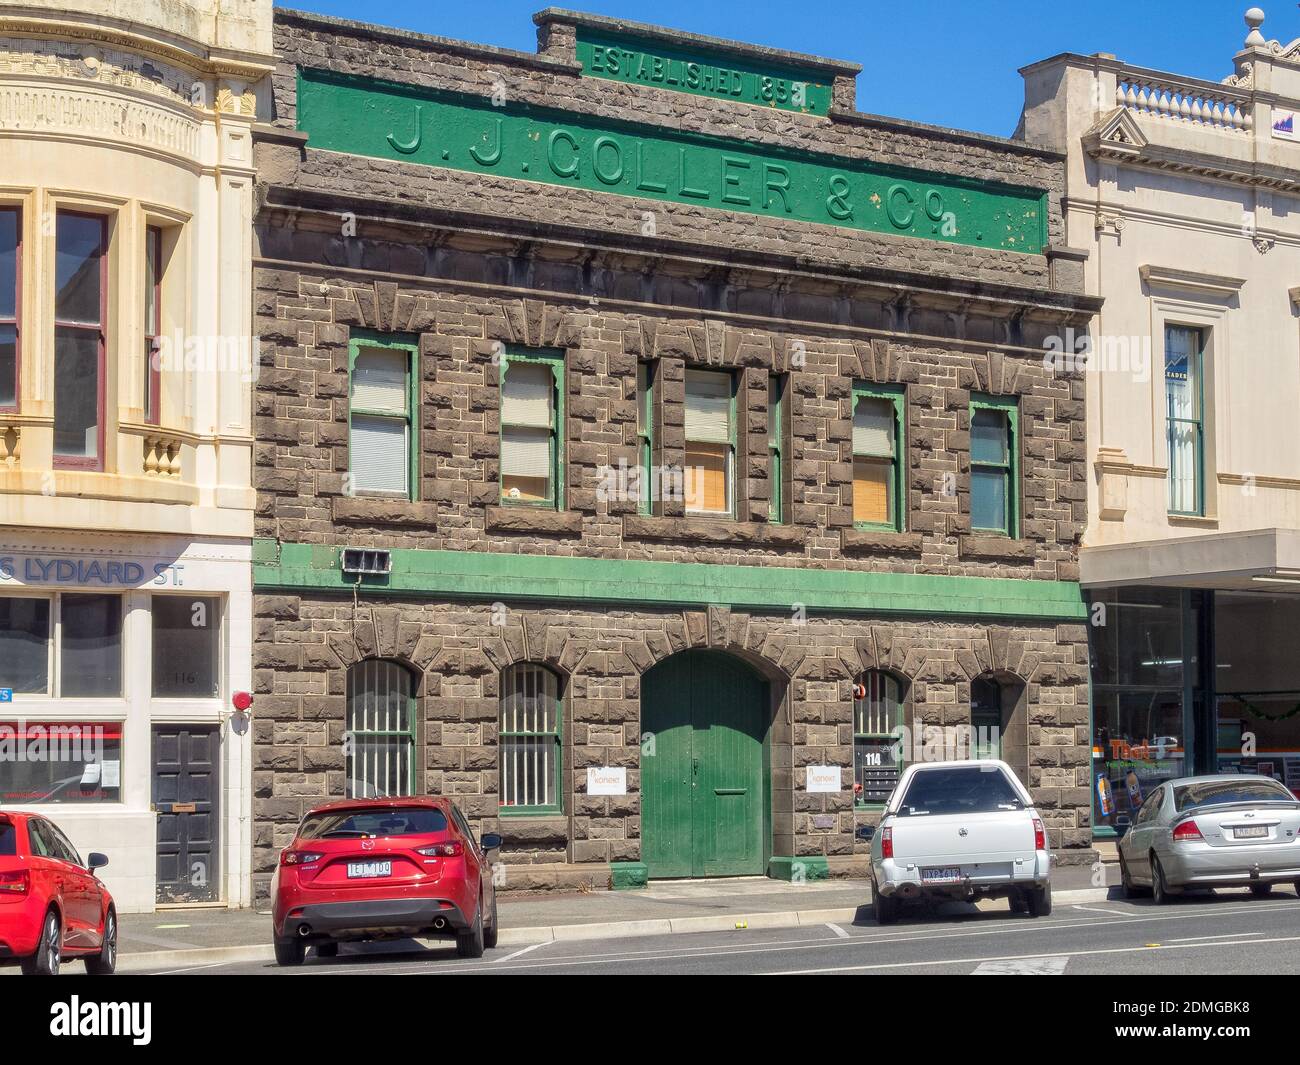 Ehemaliges Lagerhaus von J. J. Goller & Co. In der Lydiard Street - Ballarat, Victoria, Australien Stockfoto